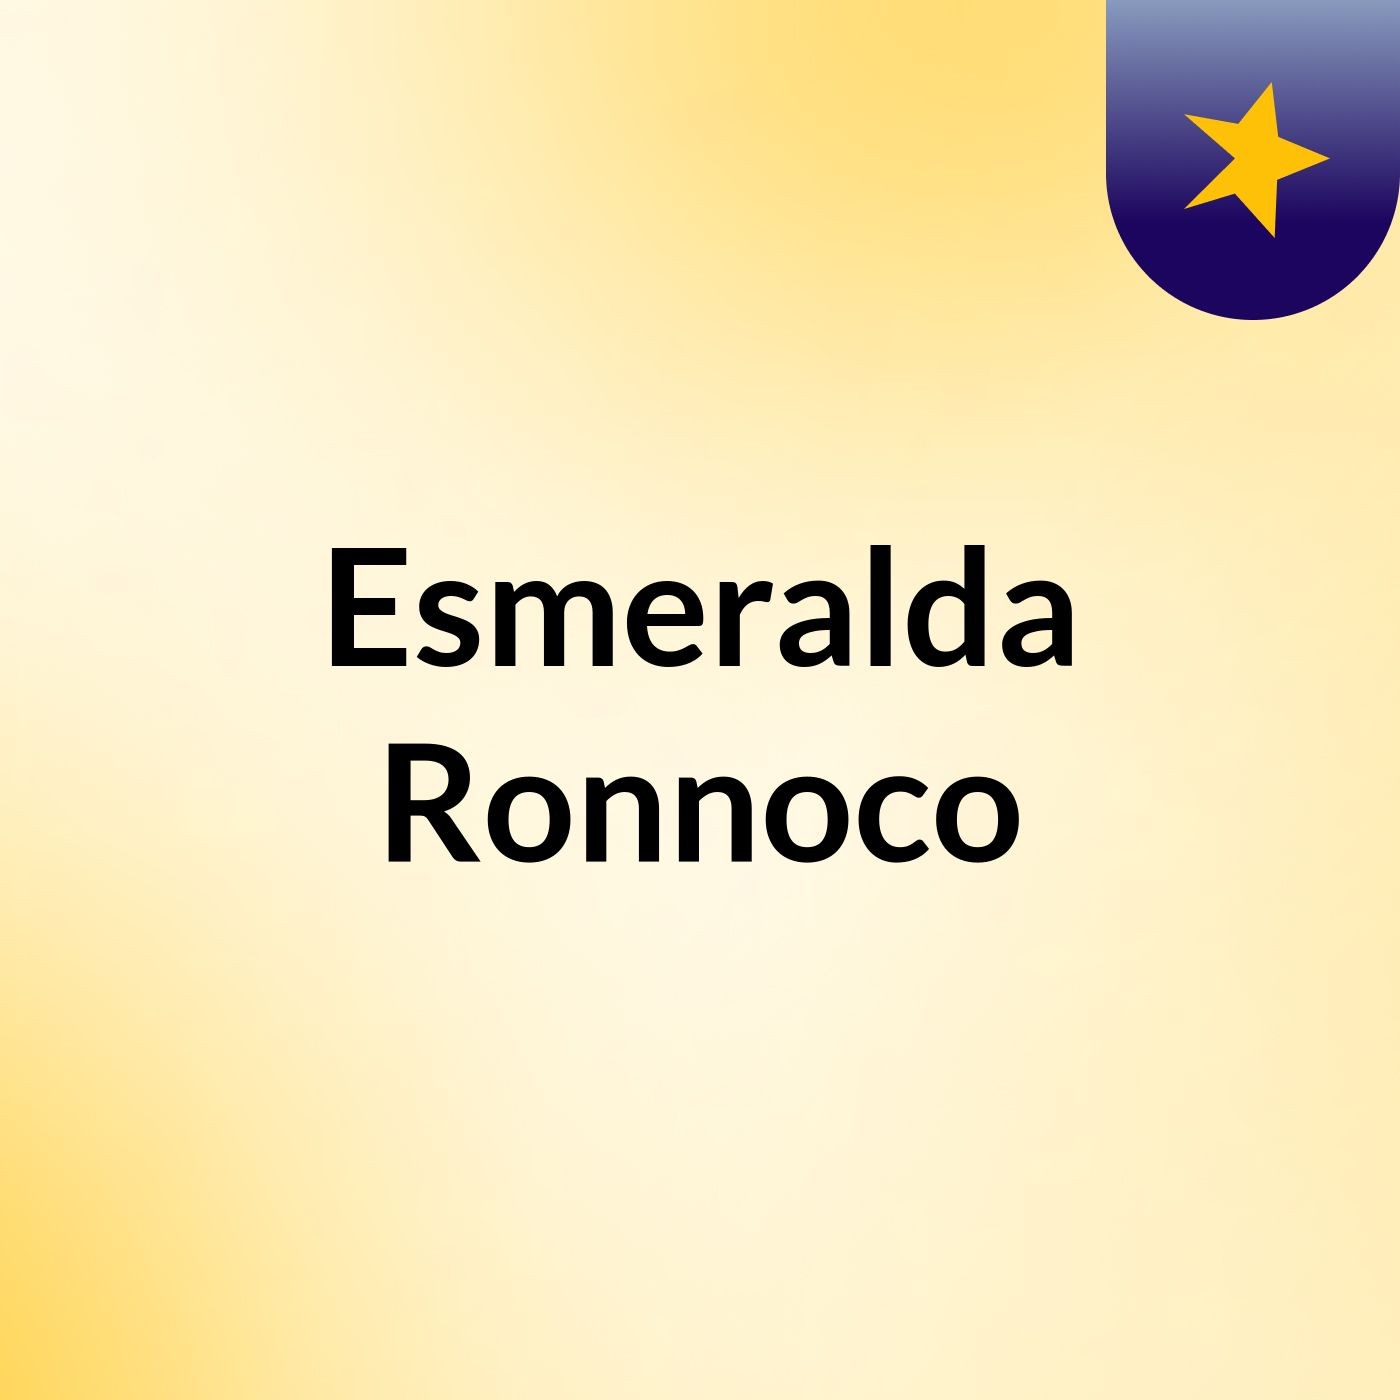 Esmeralda Ronnoco